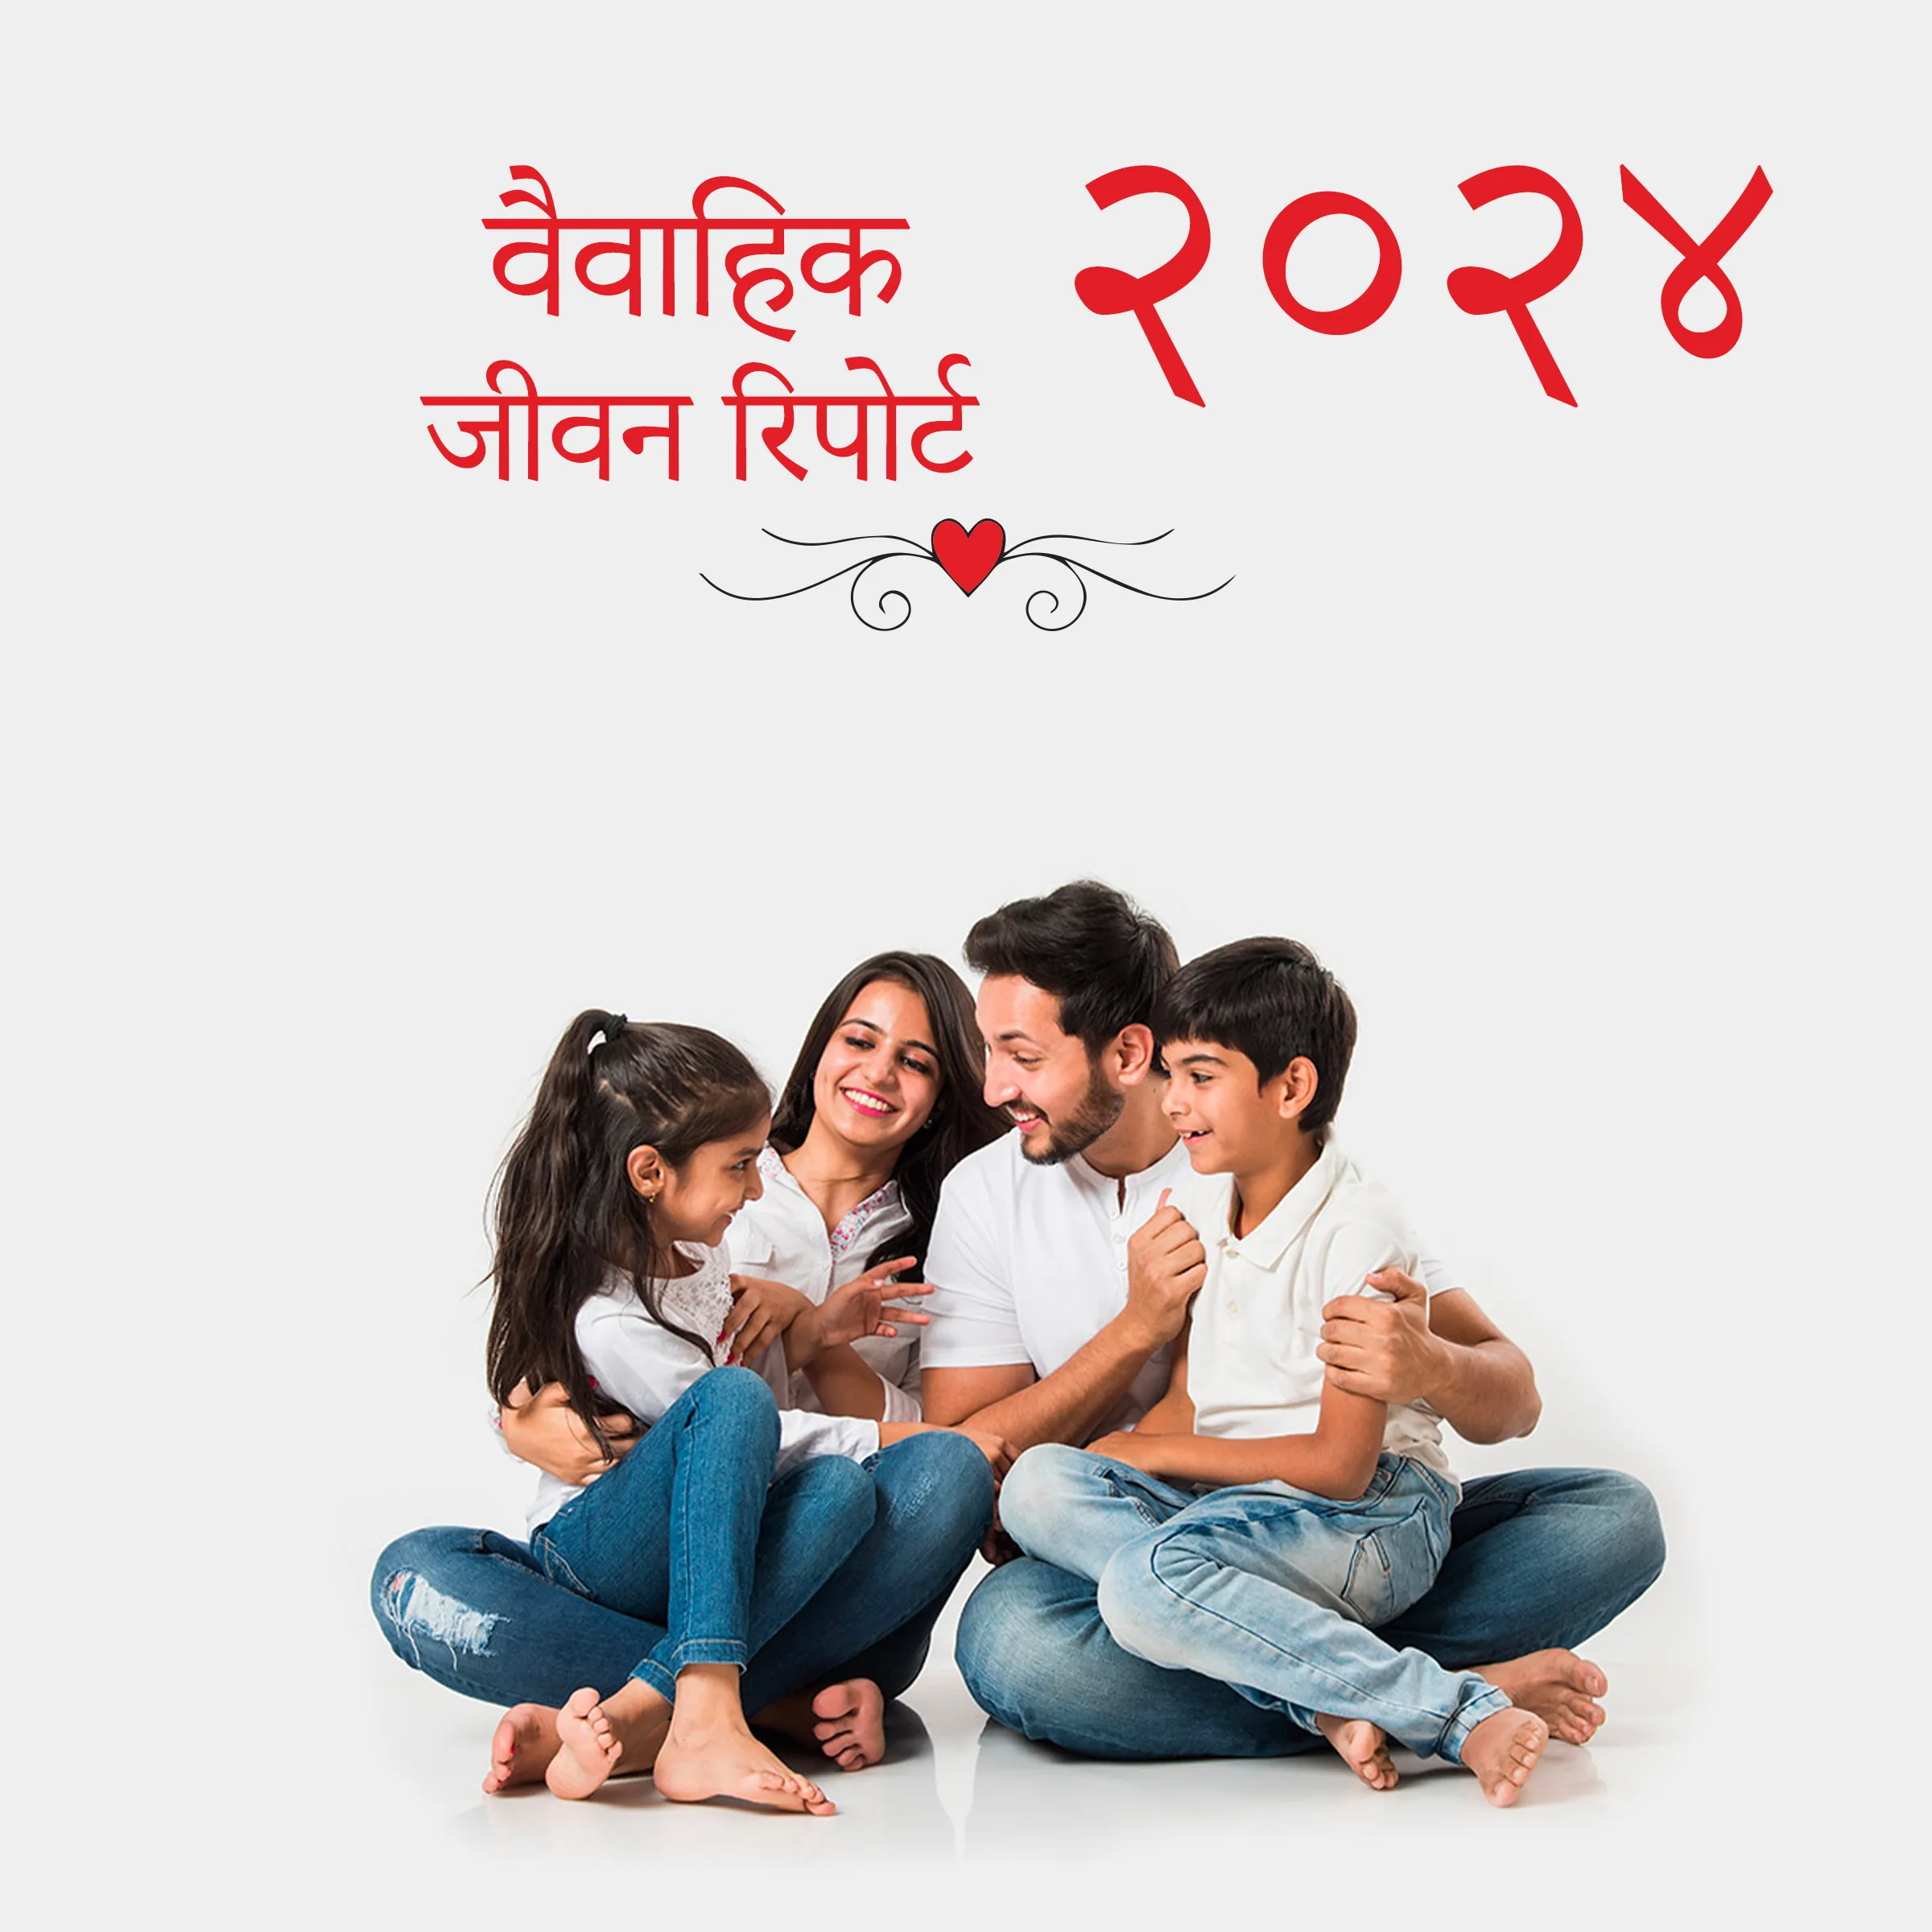 २०२४ वैवाहिक जीवन रिपोर्ट – Acharya Anvveshi